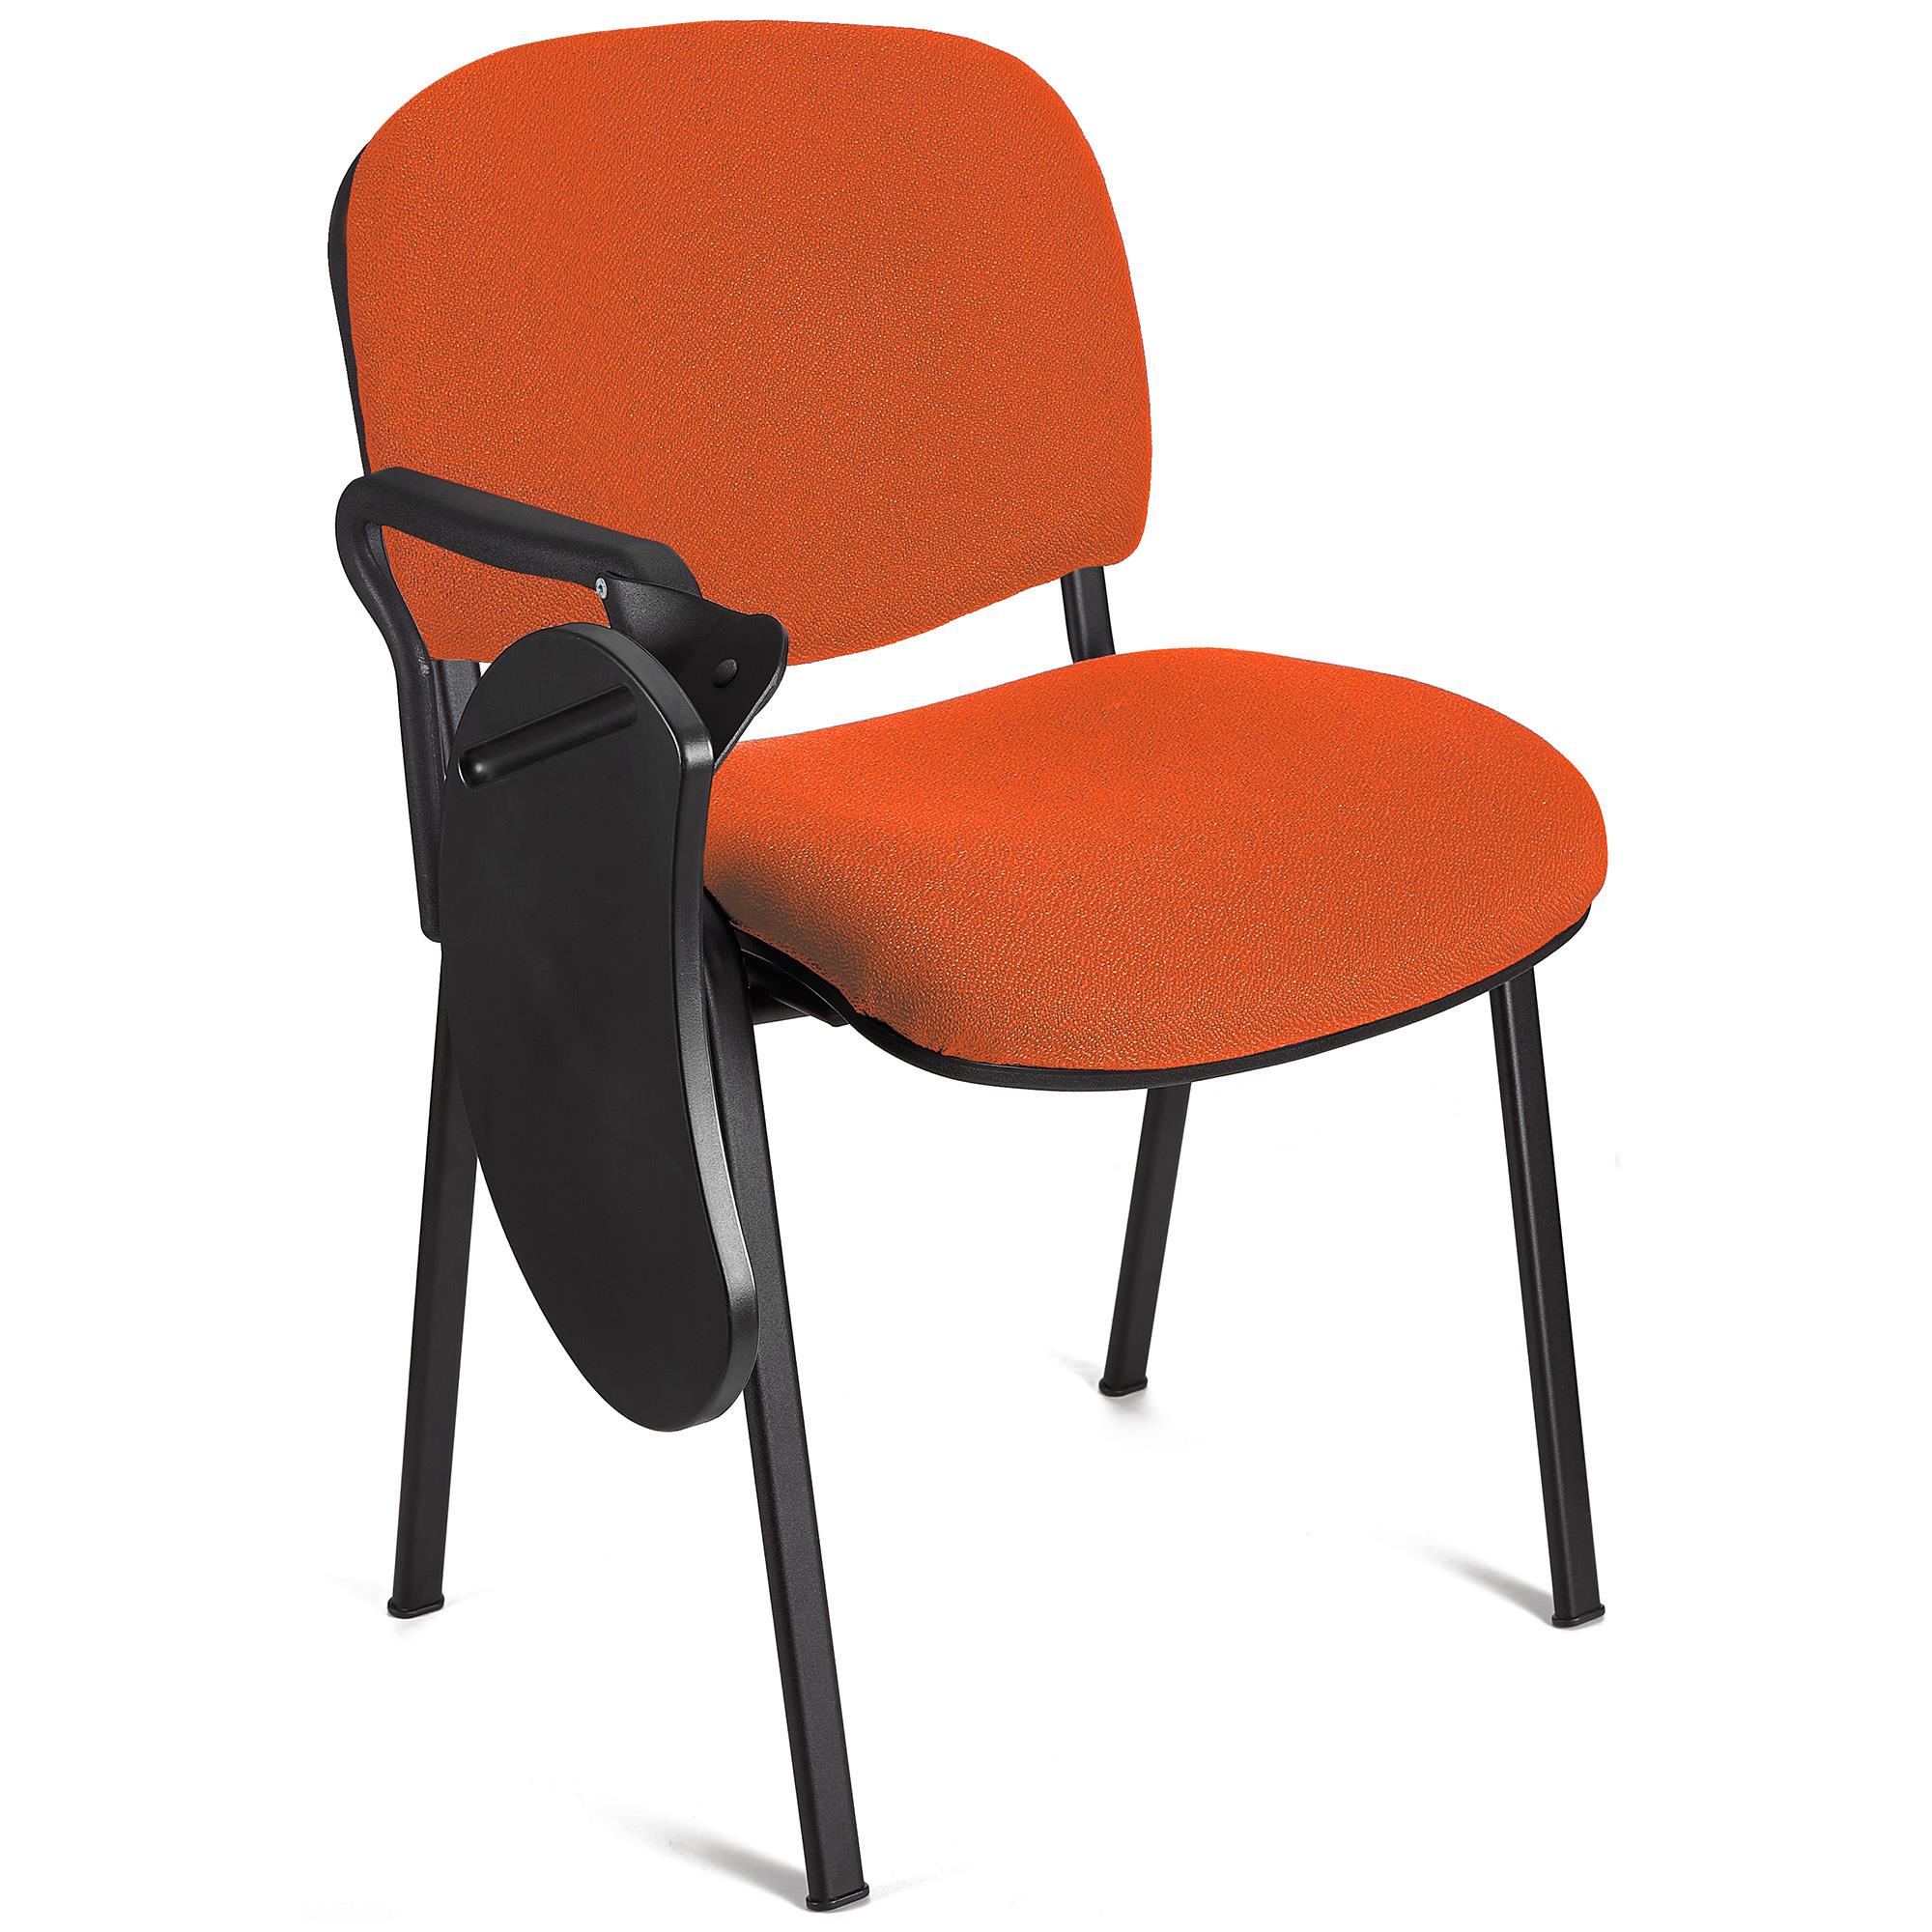 Sedia Conferenze MOBY con SCRITTOIO ribaltabile, Prezzo imbattibile, colore Arancione con gambe Nere